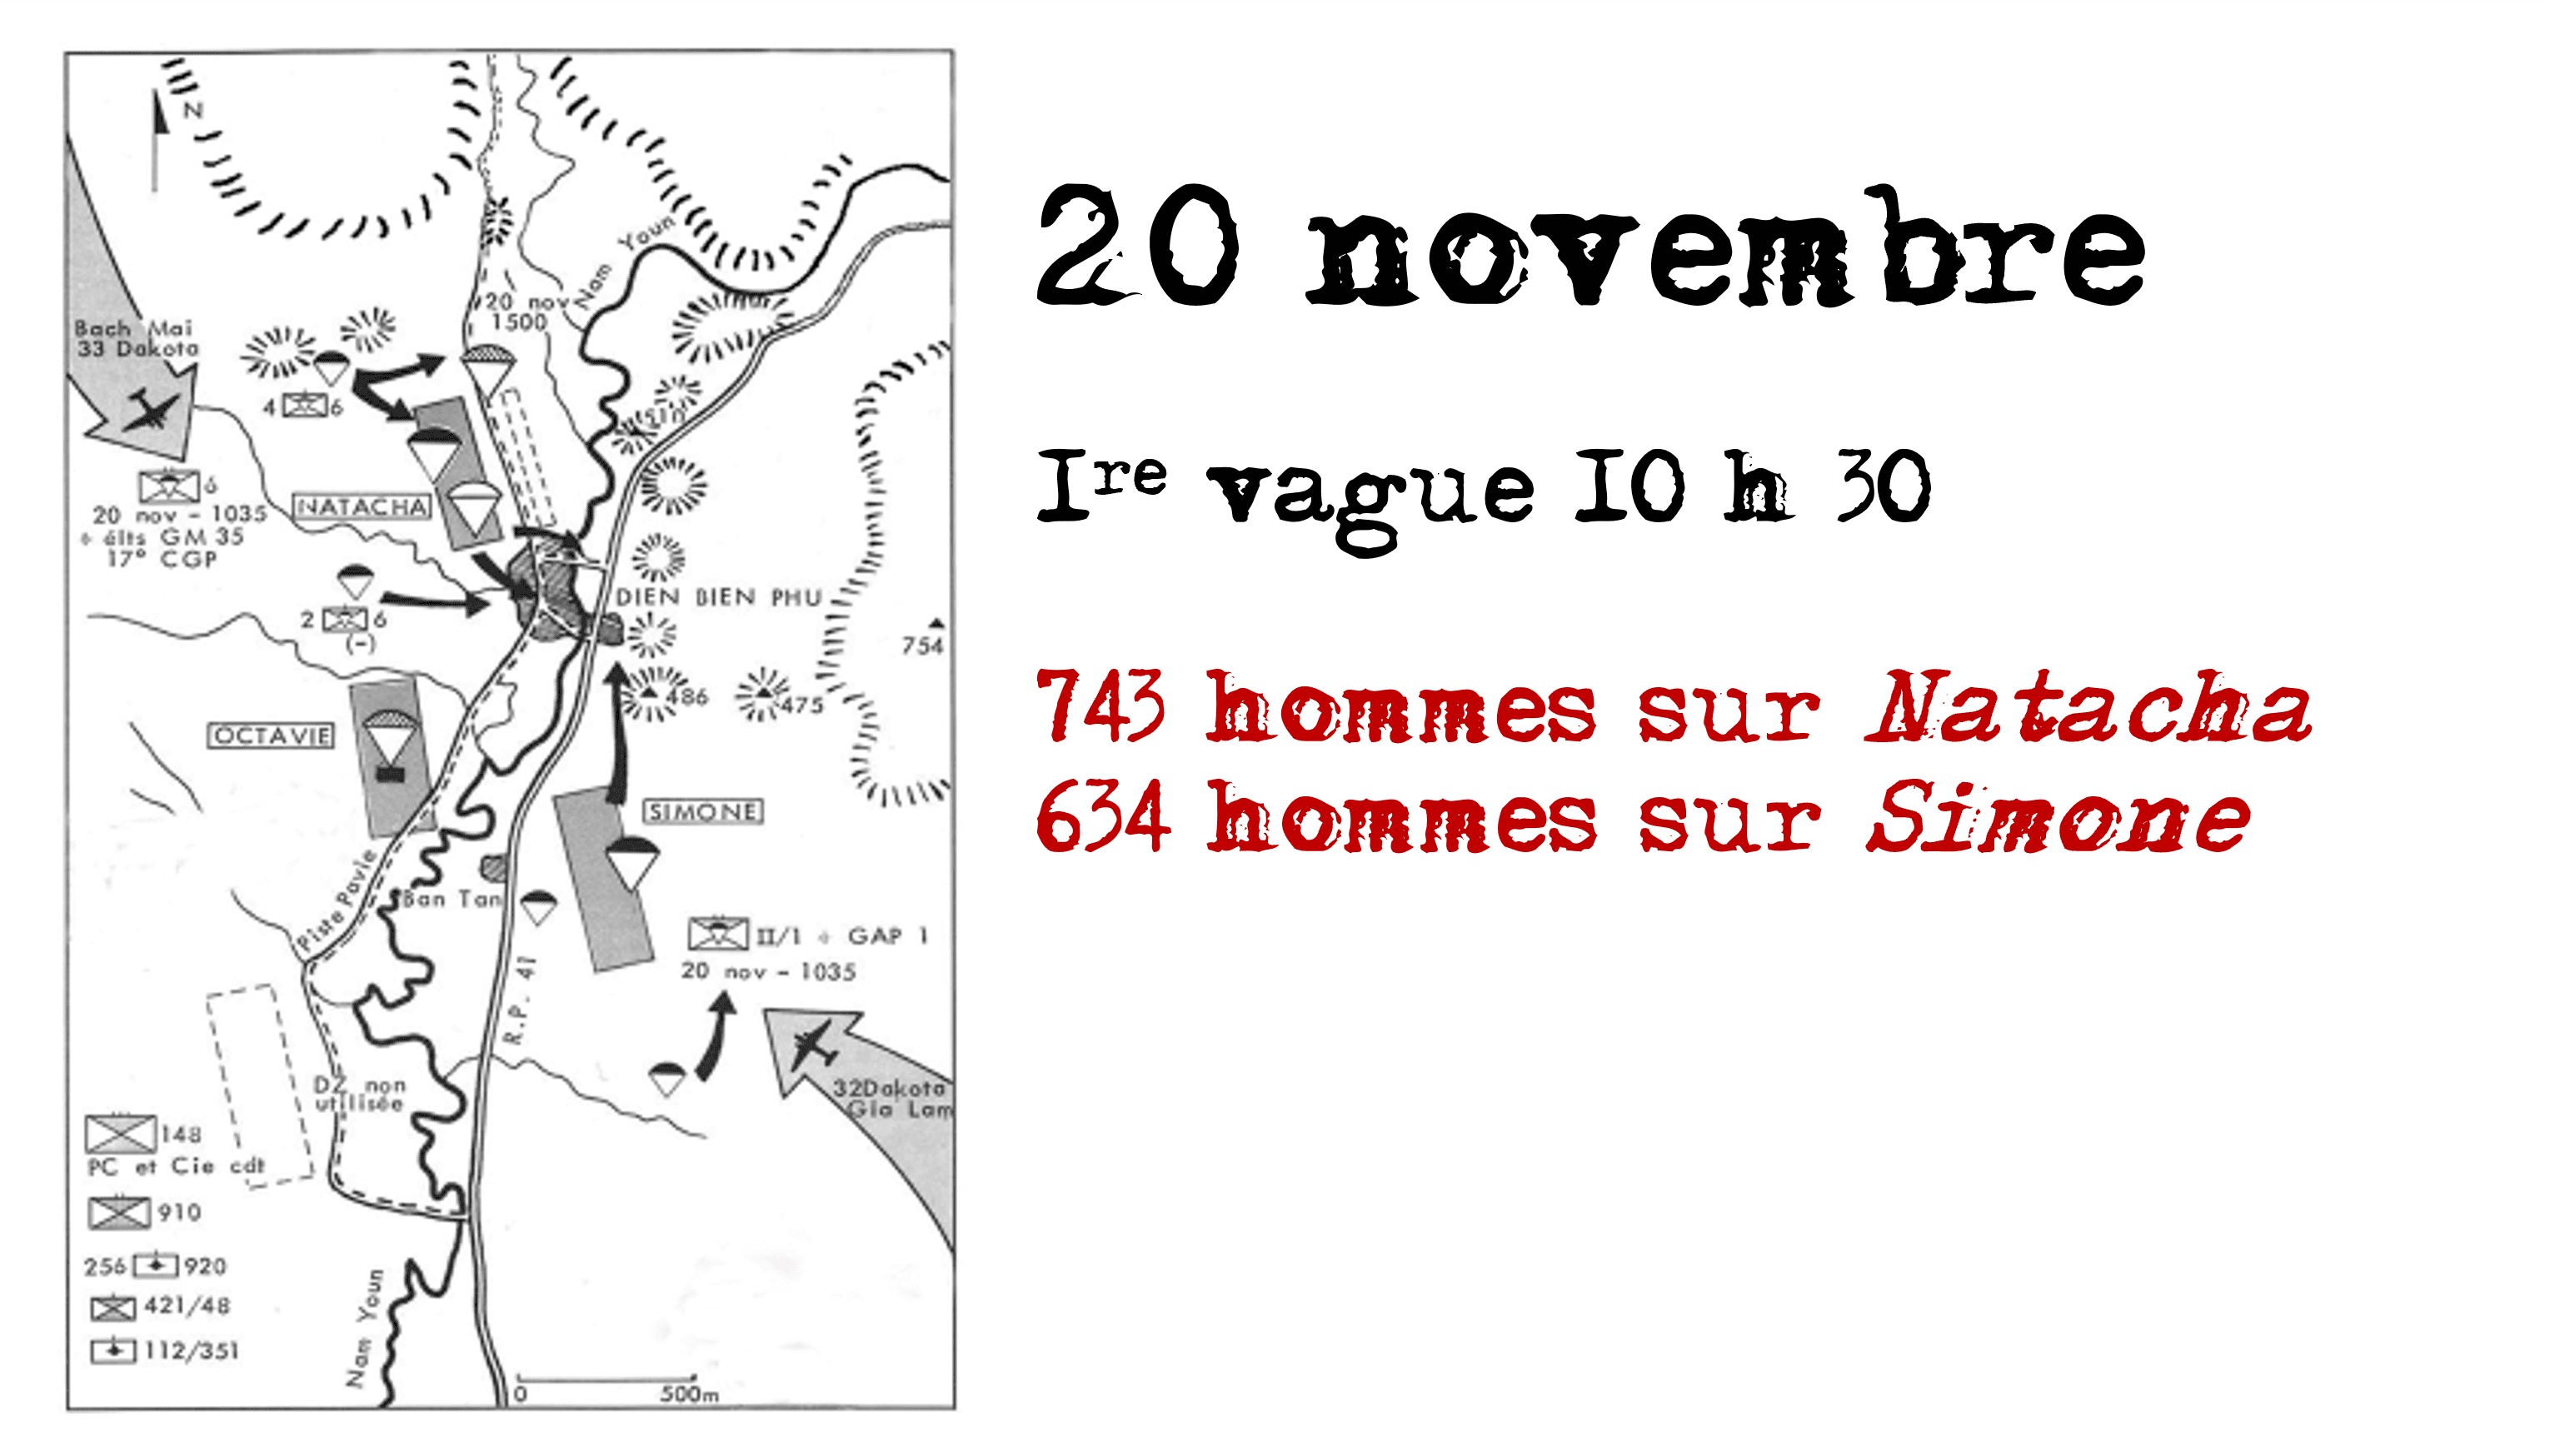 Đợt tiến quân thứ nhất ngày 20 tháng 11 năm 1953